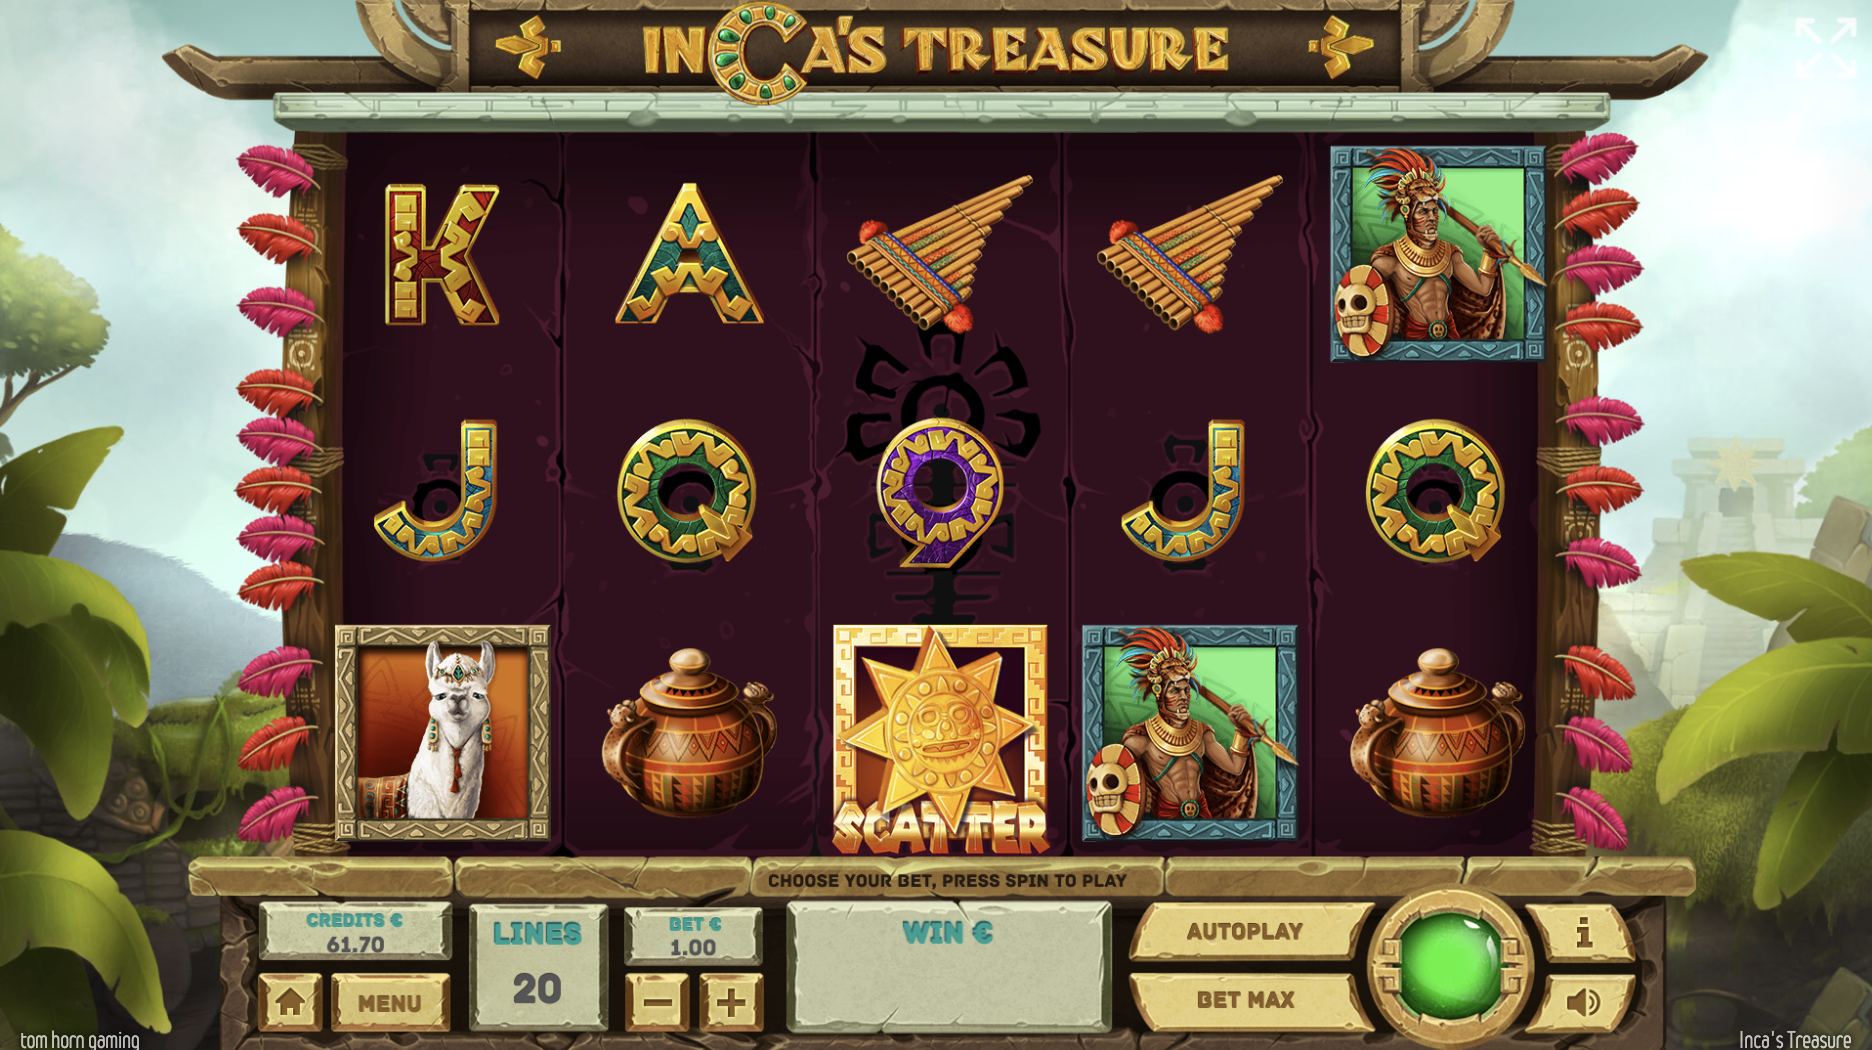 Inca’s Treasure Review